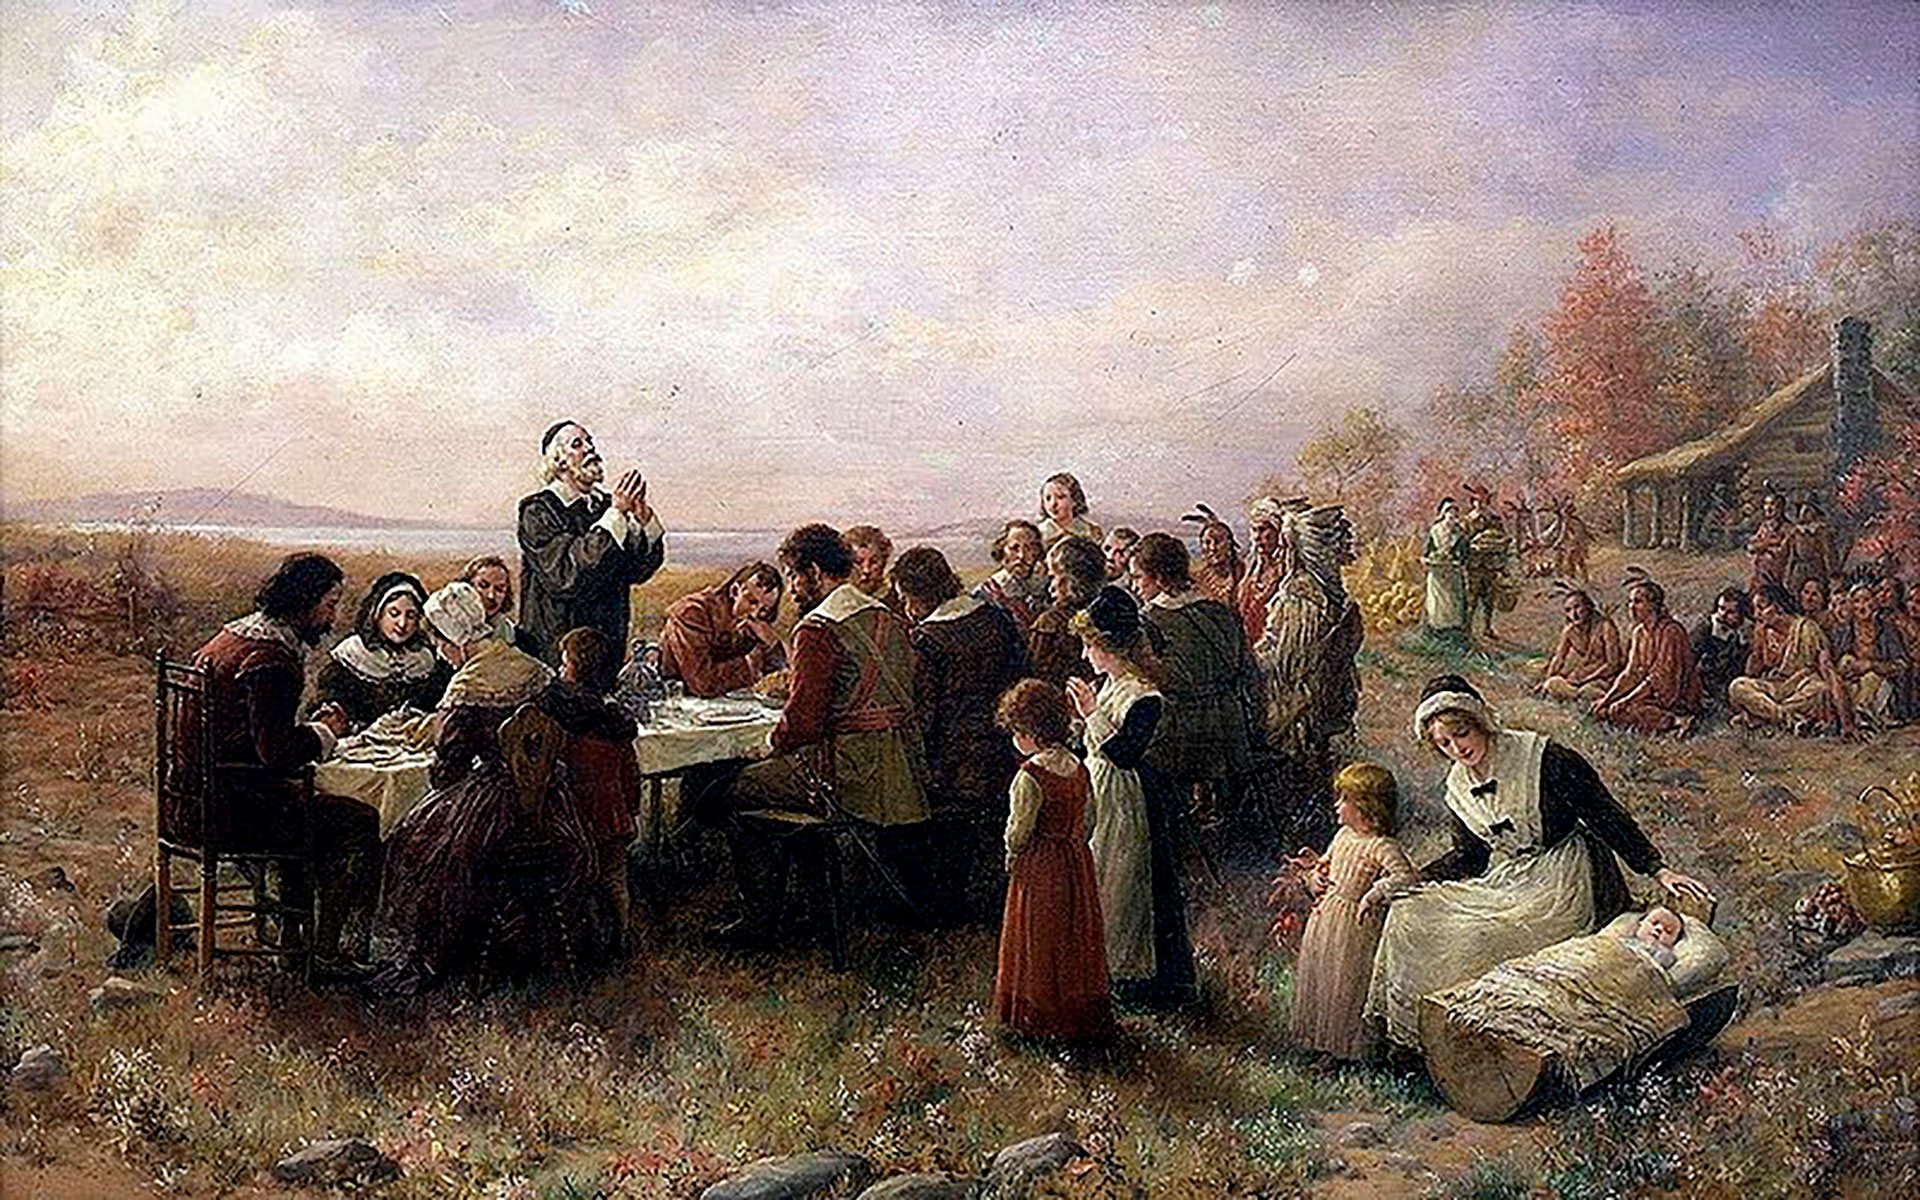 Representación del Primer Día de Acción de Gracias, en Plymouth, por Jennie A. Brownscombe (Wikimedia Commons)